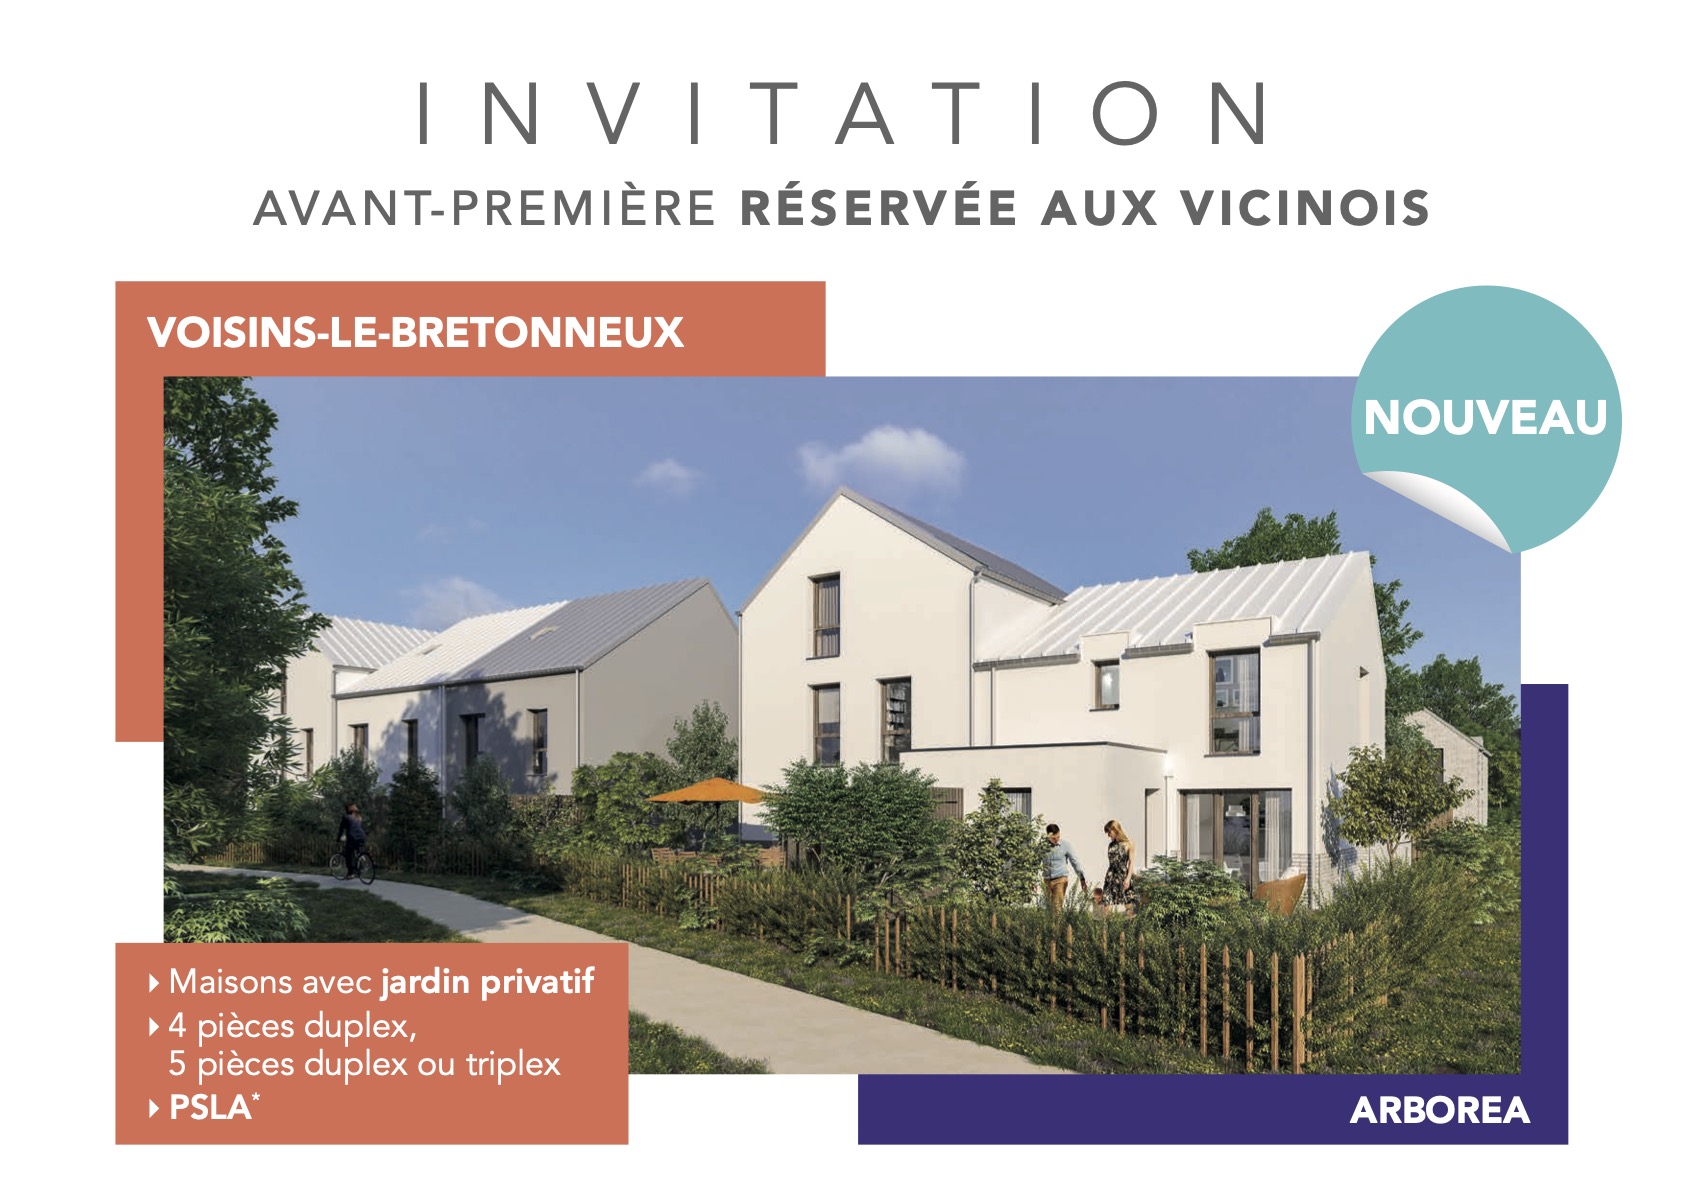 Arcade Promotion Arborea Voisins le Bretonneux Carton dinvitation Vicinois avant premiere PSLA Mai 2021